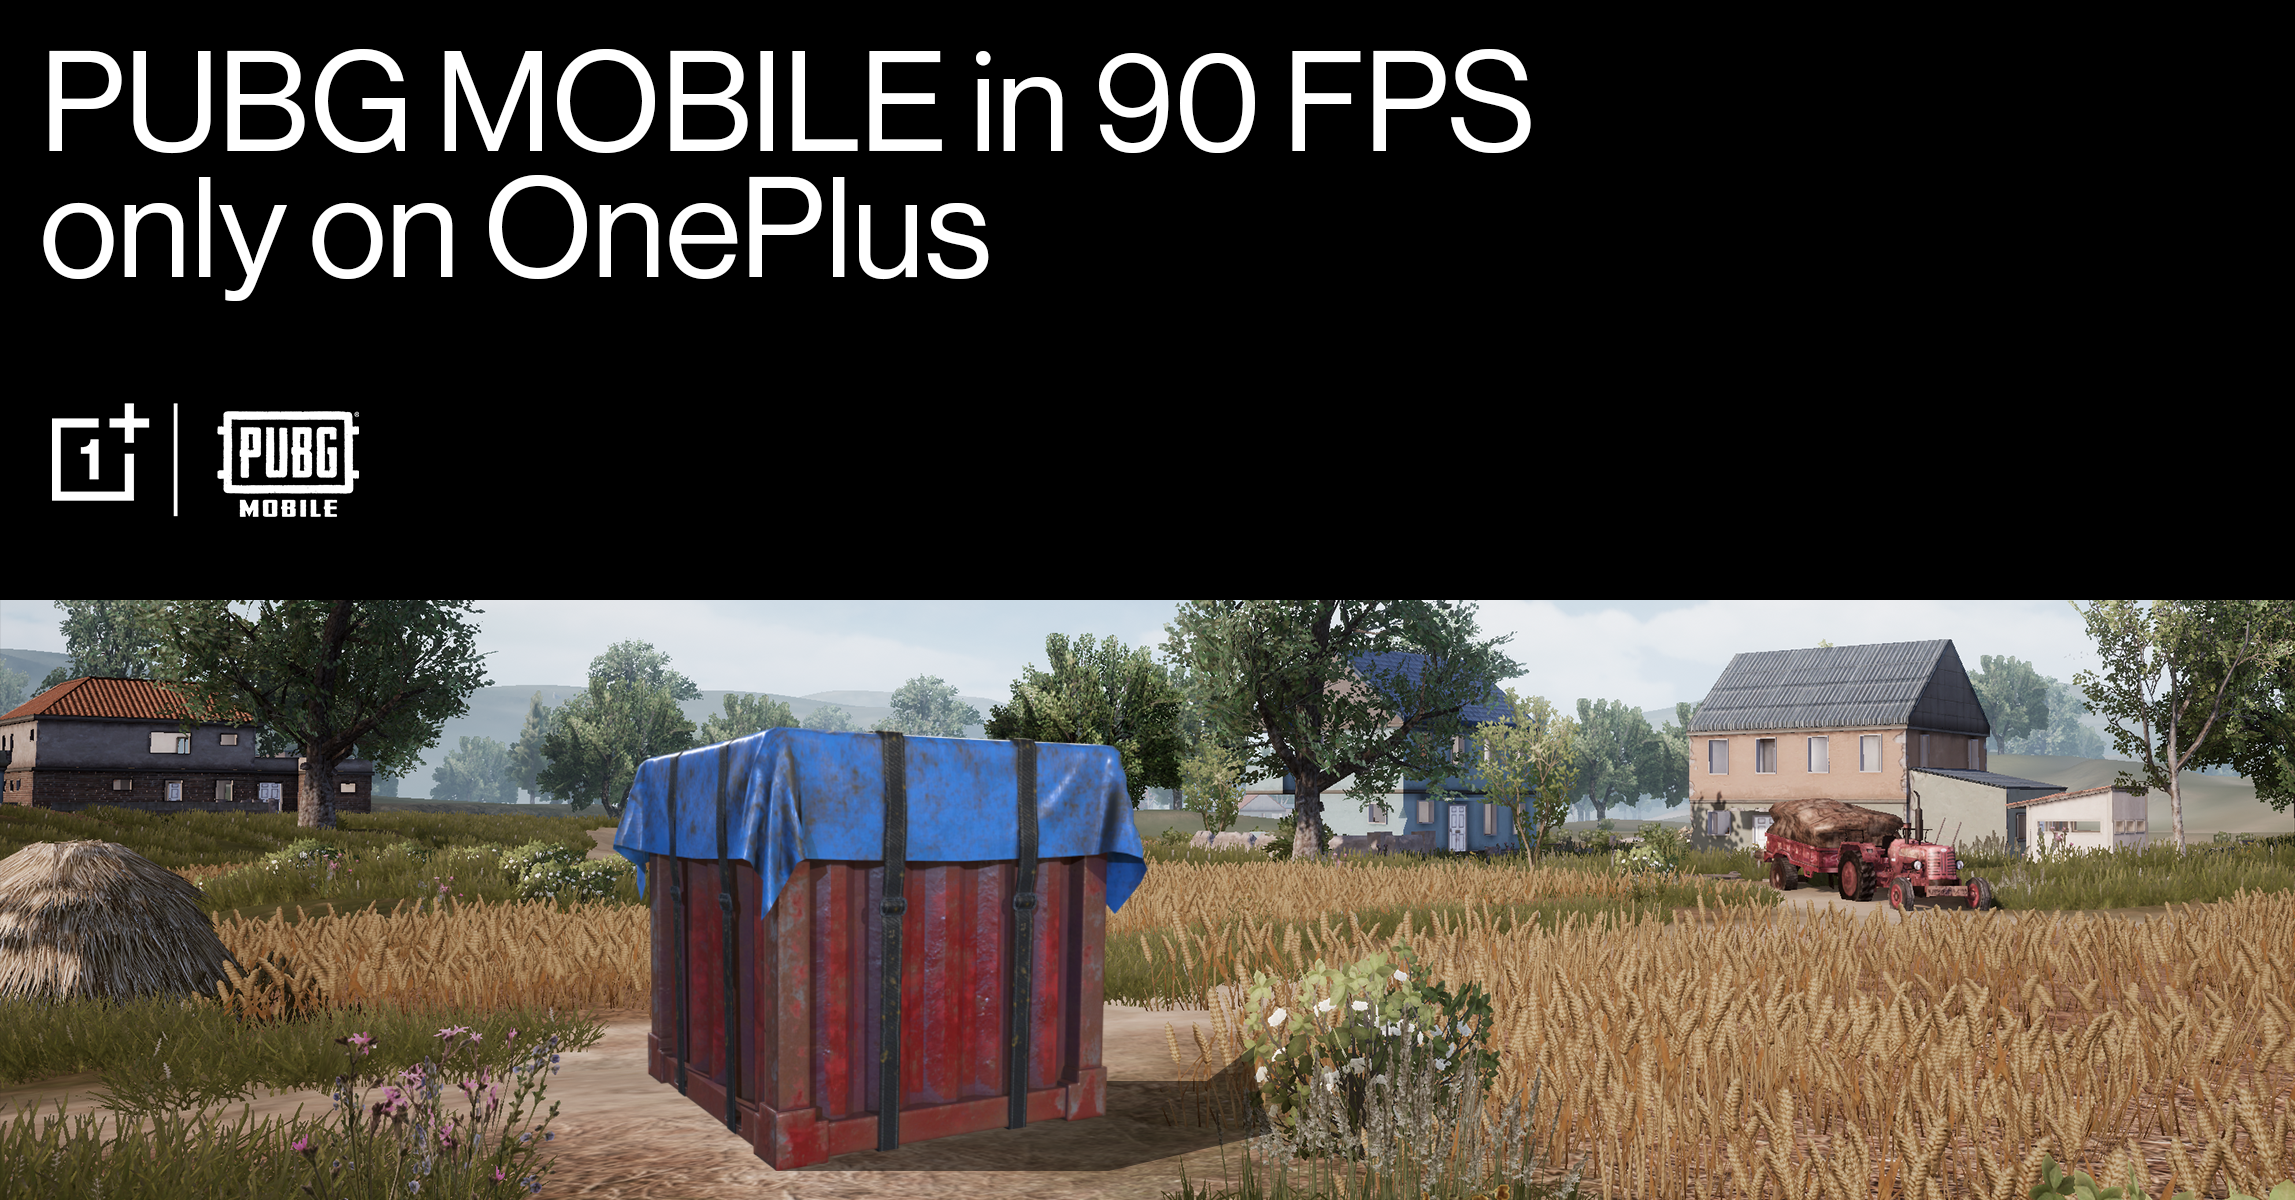 OnePlus y PUBG Mobile se unen para ofrecer una experiencia exclusiva de juego a 90 FPS para usuarios móviles